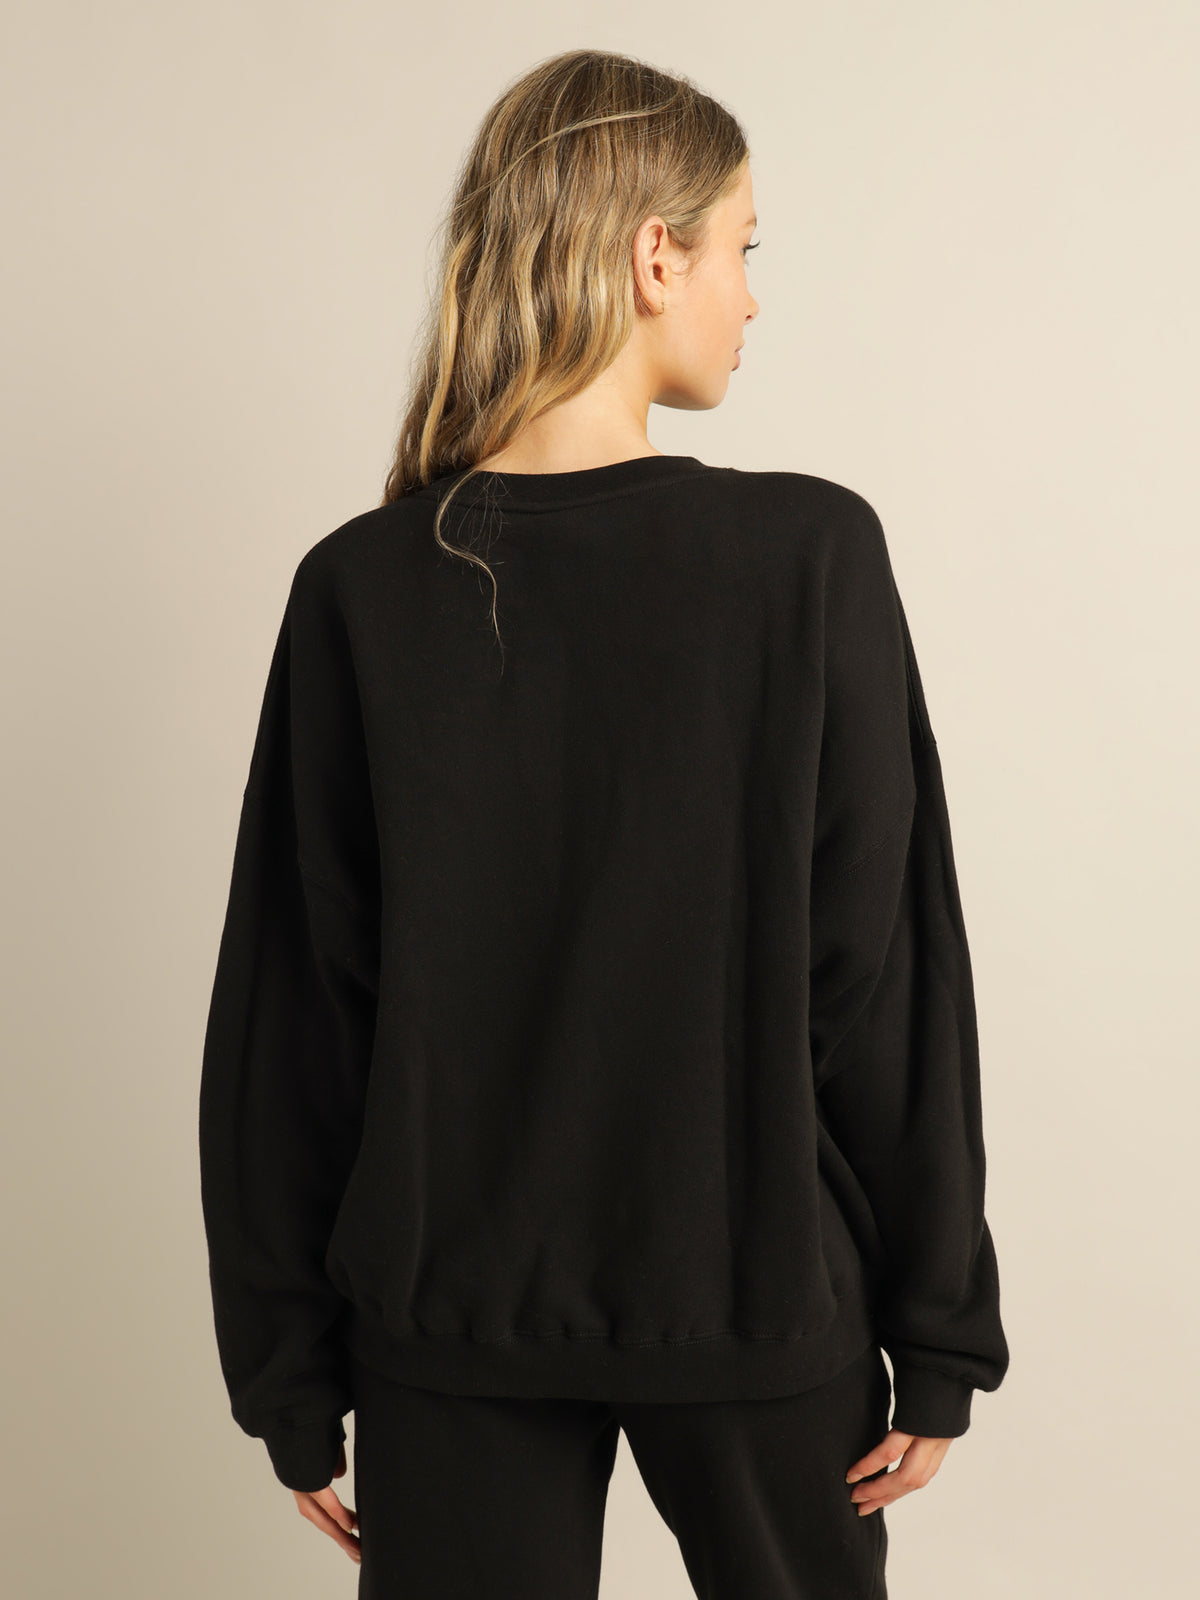 Soul Fleece Crew Sweater in Black